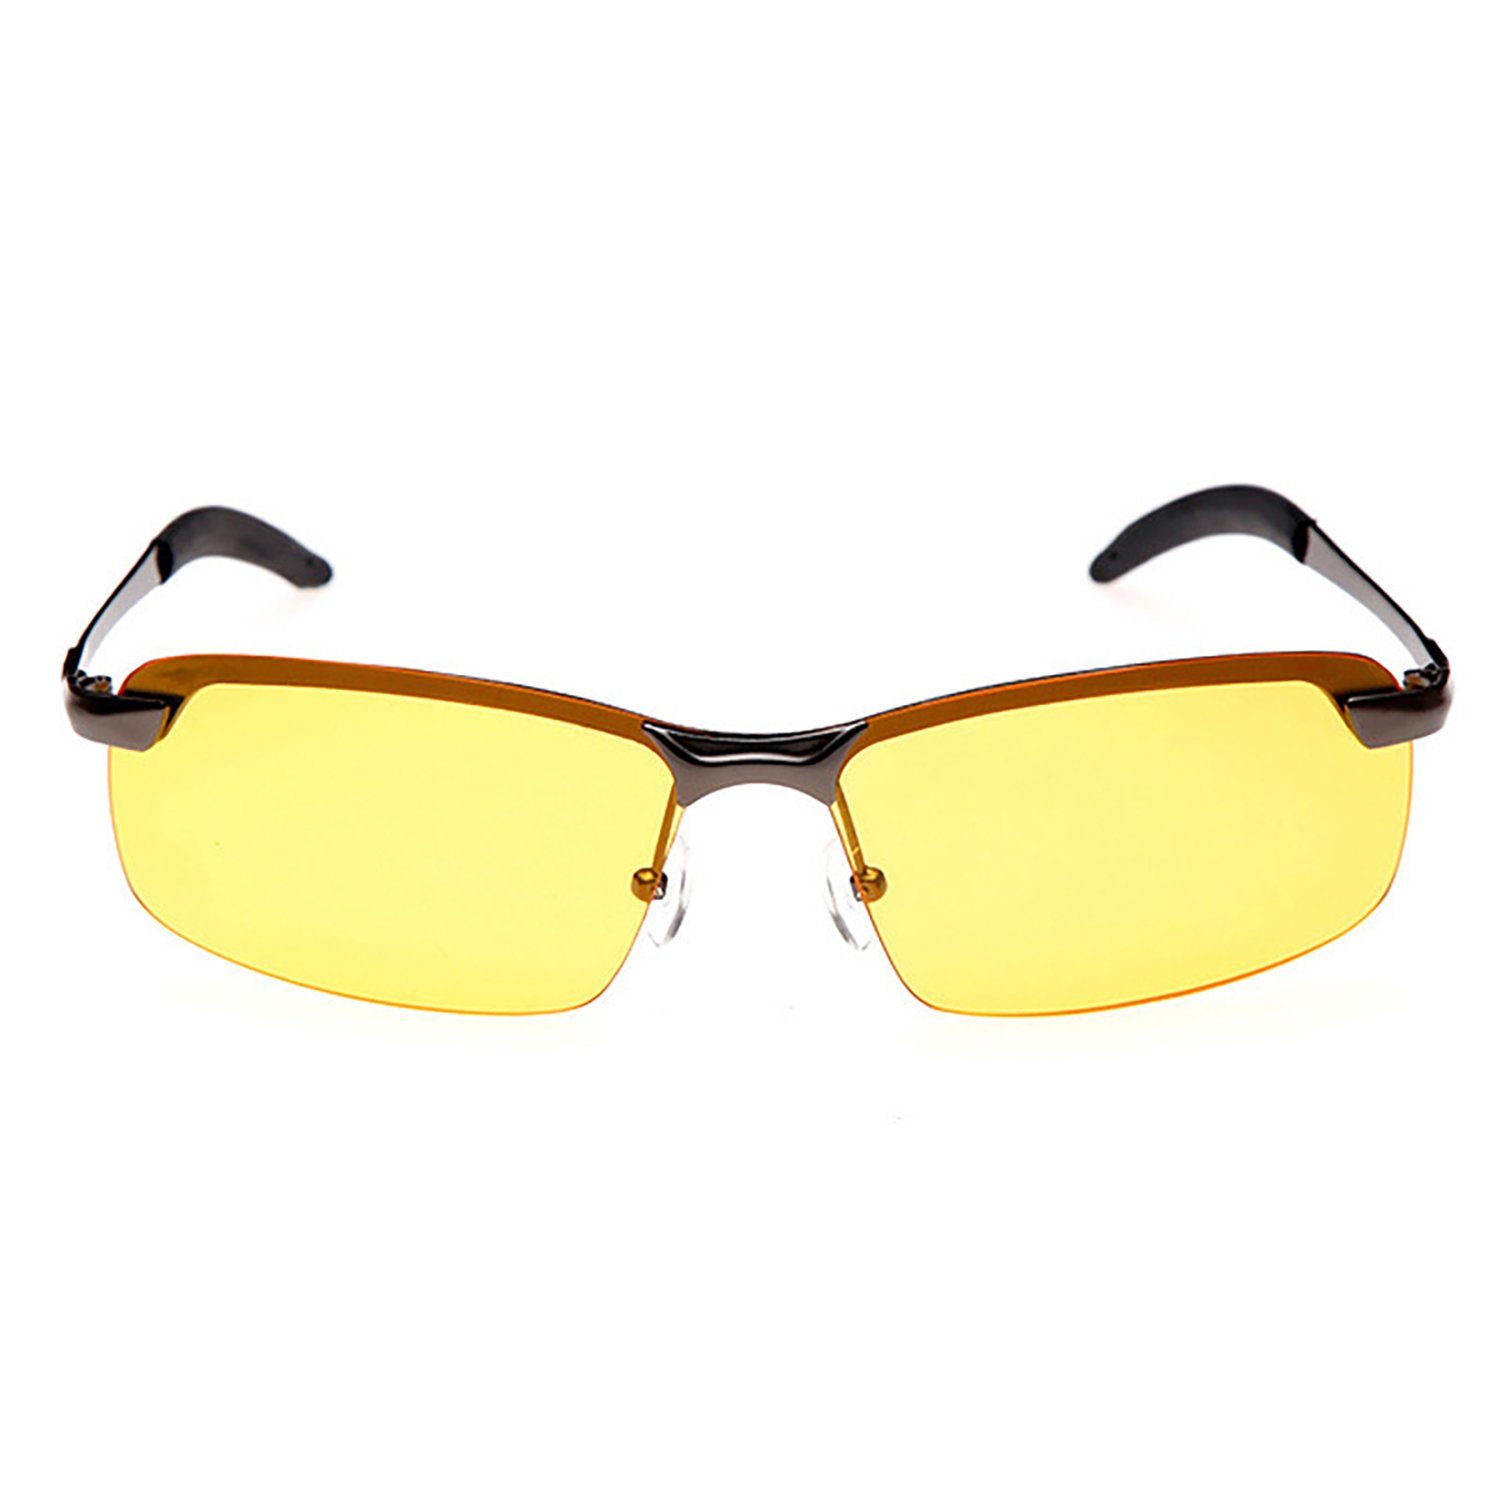 yozhiqu Brille HD-Nachtsichtbrille polarisiert, Antireflexbrille mit Metallrahmen, Unisex, ideal zum Radfahren, Skaten, Wandern und Bergsteigen.